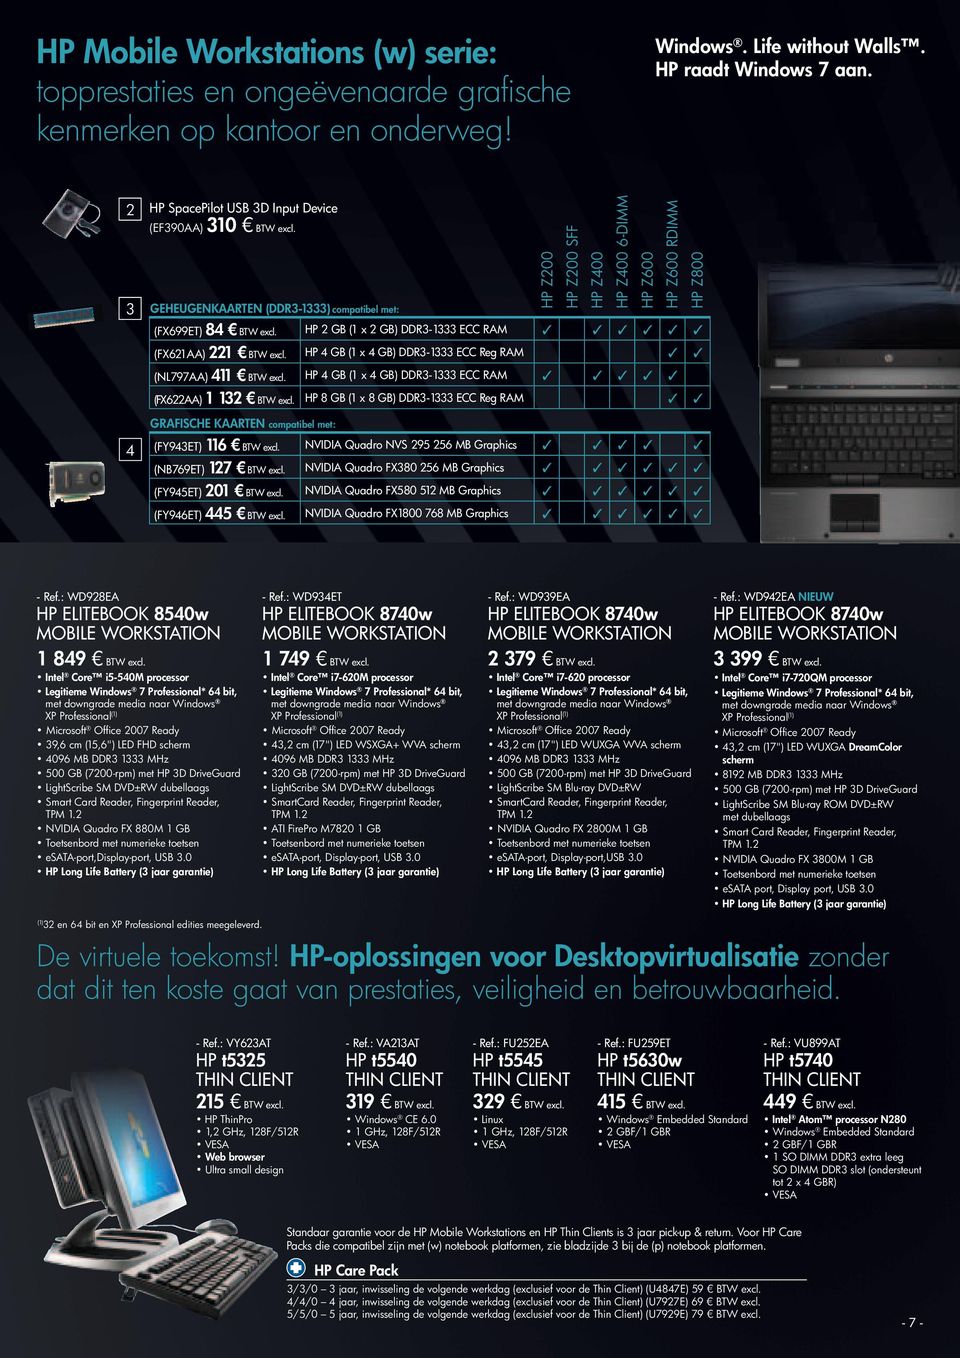 HP GB ( x GB) DDR3-333 ECC Reg RAM (NL797AA) BTW excl. HP GB ( x GB) DDR3-333 ECC RAM (FX622AA) 32 BTW excl.